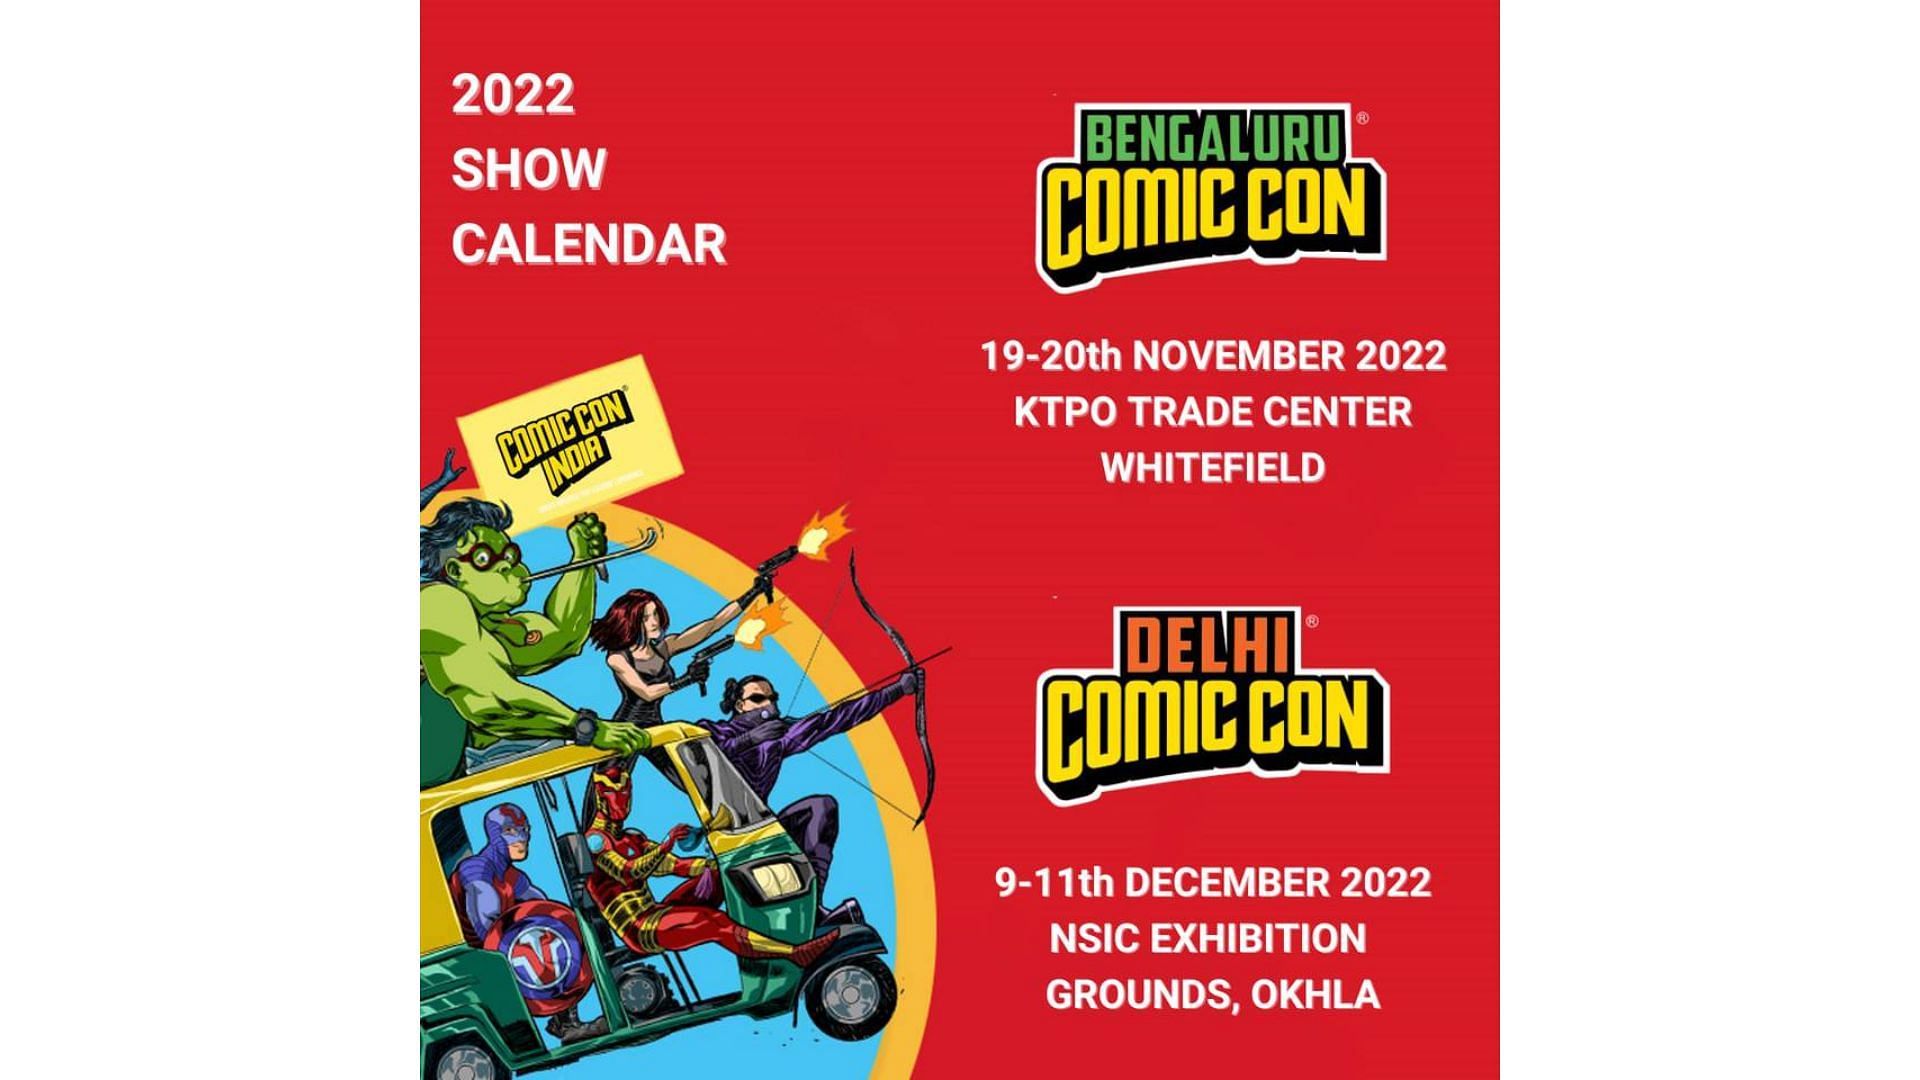 Comic Con 2022 in Bangalore and Delhi, India. (image via Instagram/comicconindia)